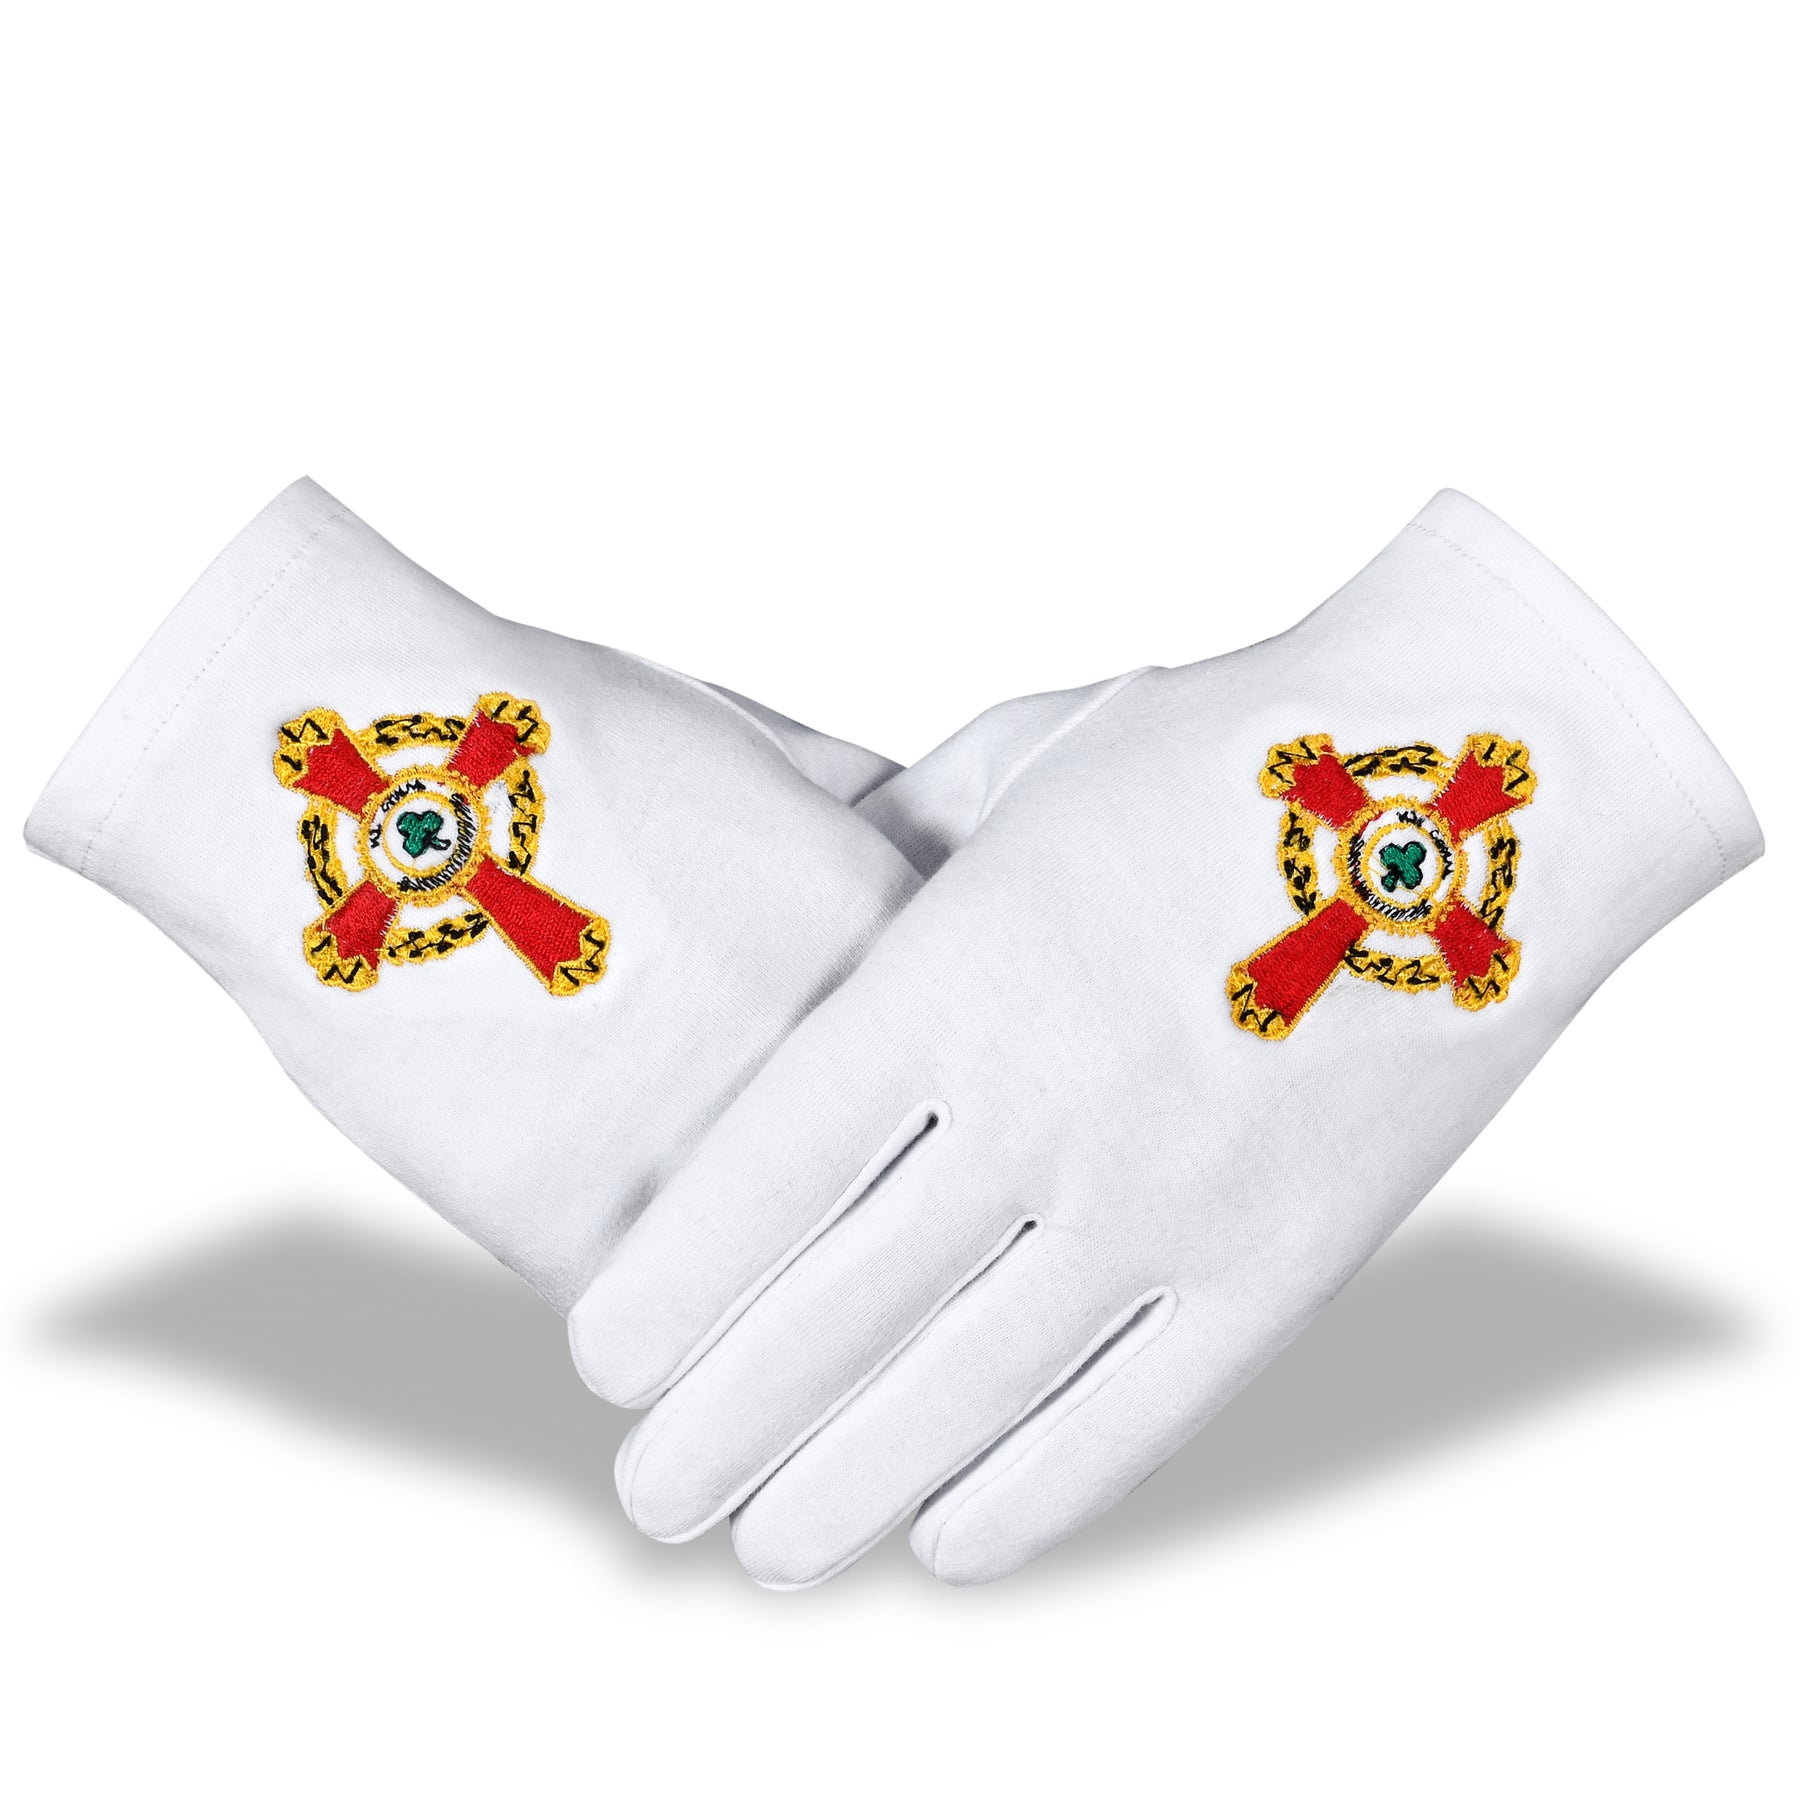 33rd Degree Scottish Rite Glove - White Pure Cotton - Bricks Masons